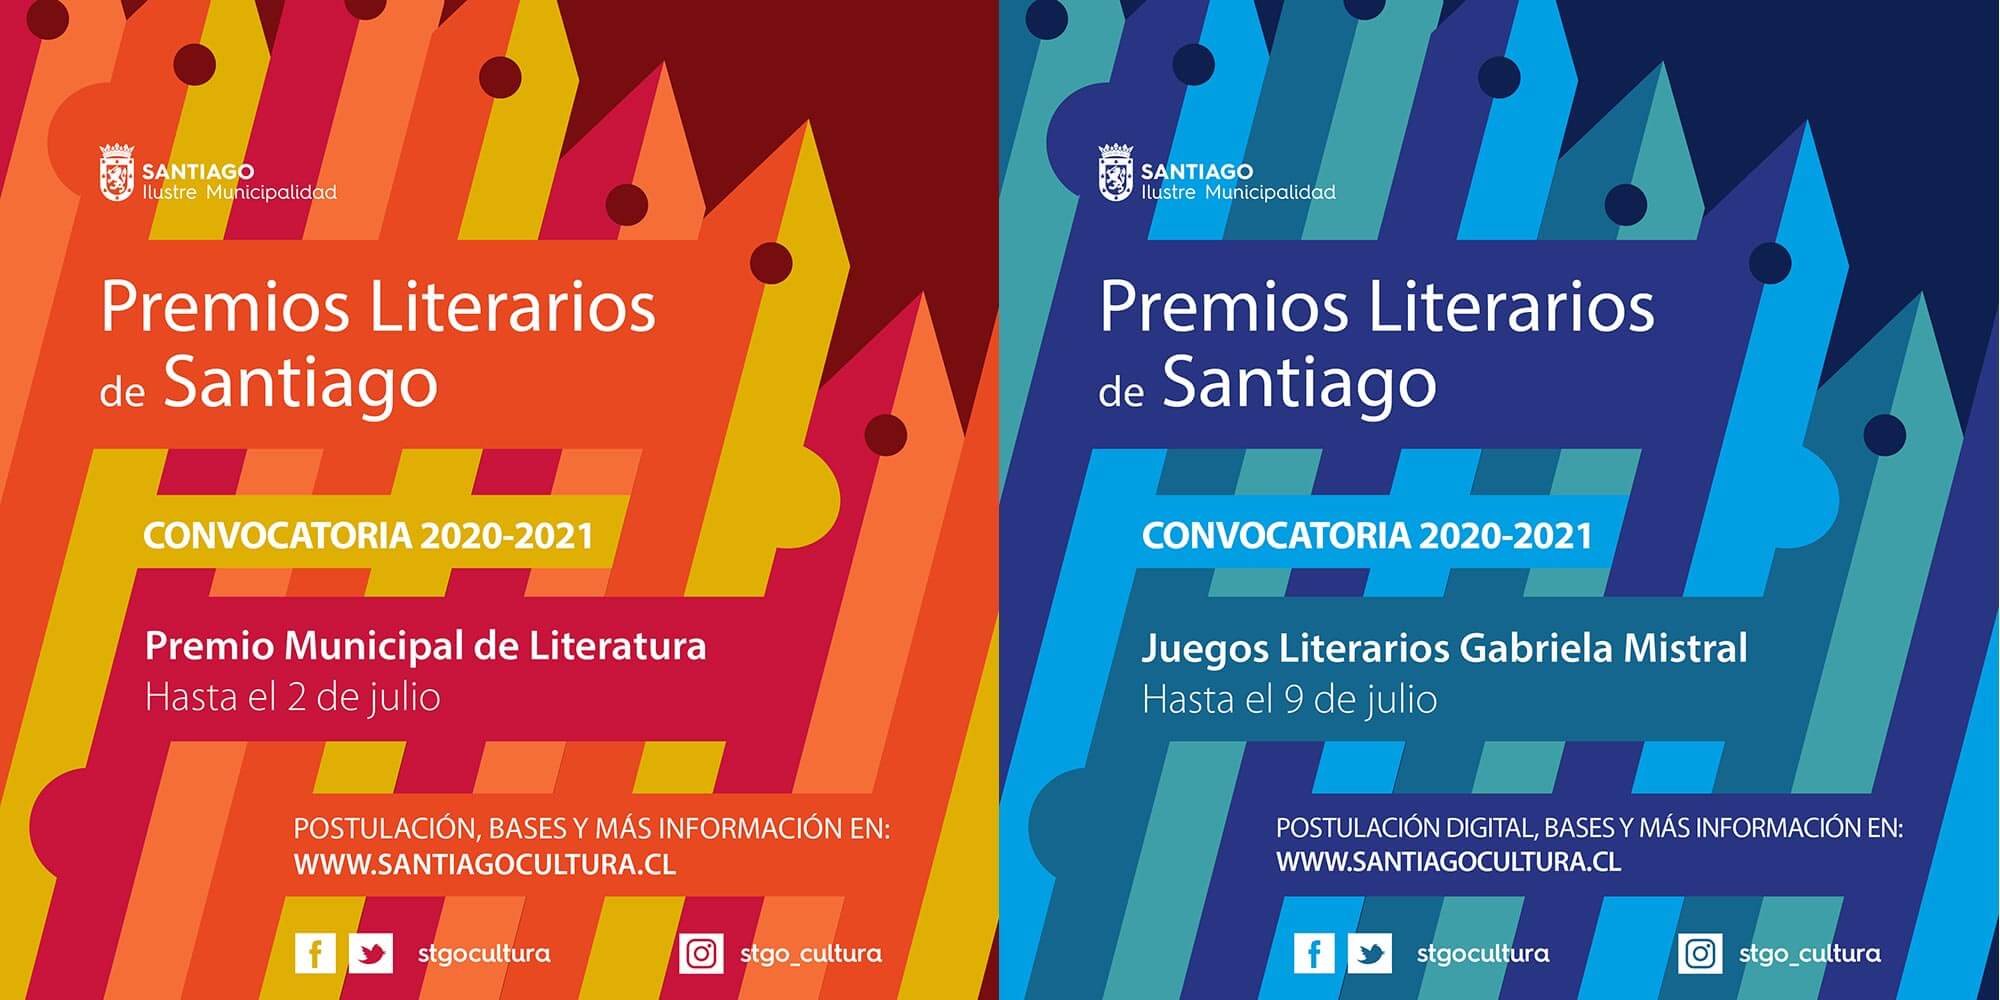 Los Premios Literarios de Santiago abren su convocatoria 2020-2021